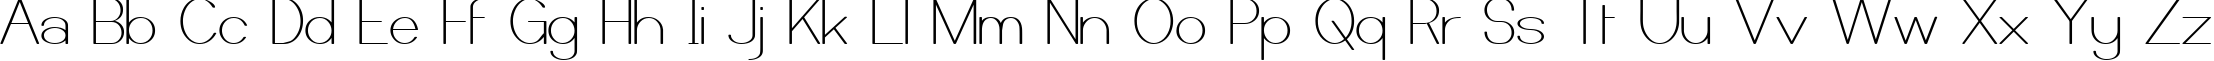 Пример написания английского алфавита шрифтом Castorgate